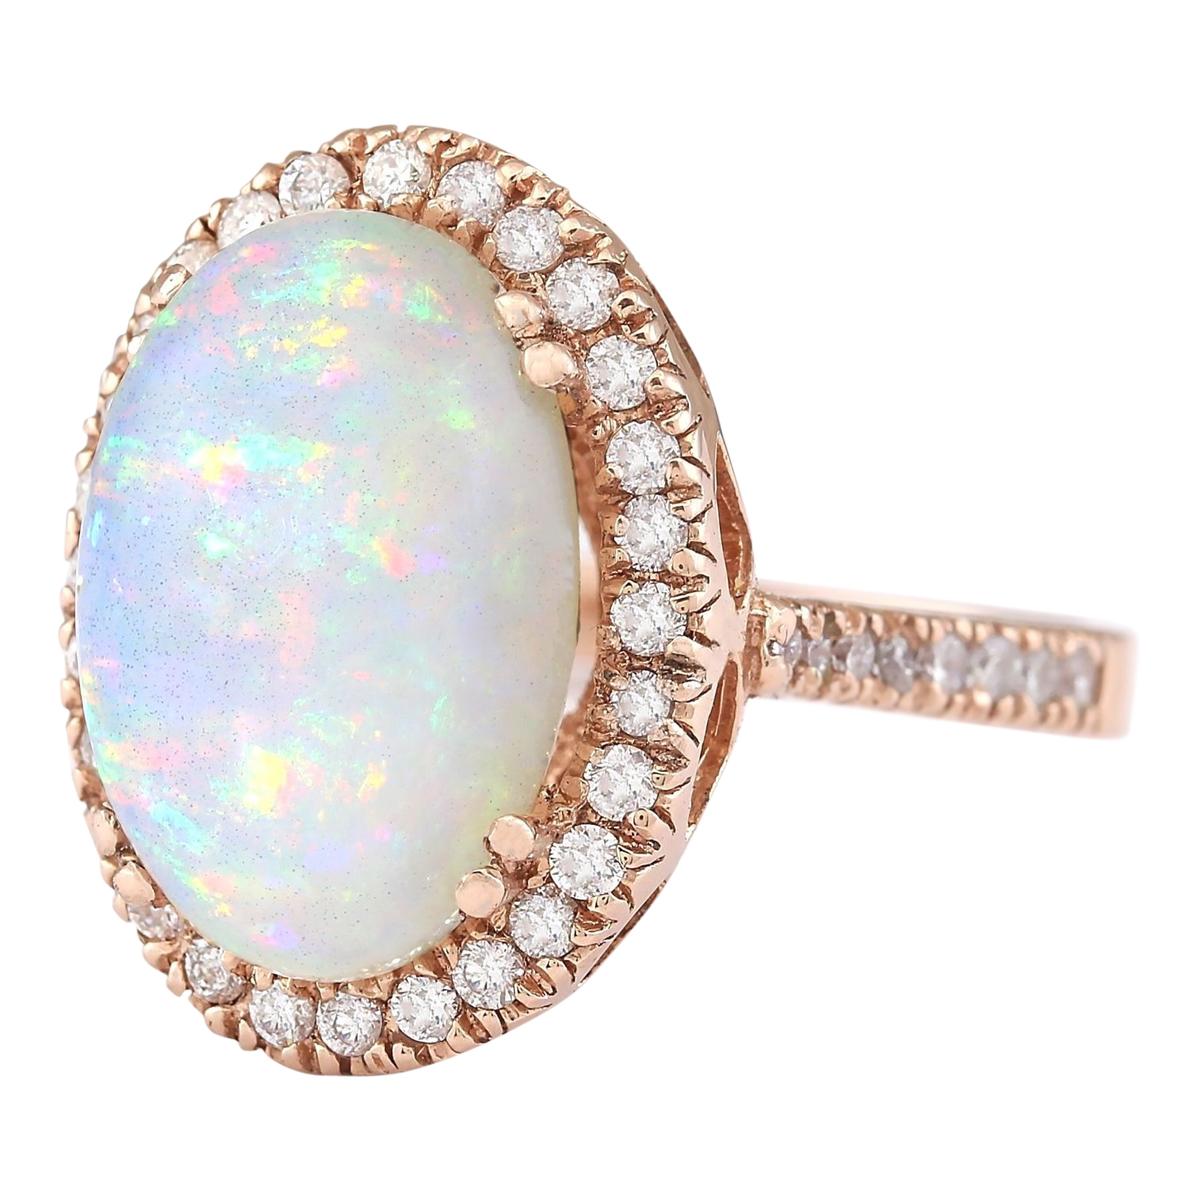 7.92 Carat Natural Opal 14 Karat Rose Gold Diamond Ring
Stamped: 14K Rose Gold
Total Ring Weight: 9.0 Grams
Total Natural Opal Weight is 7.17 Carat (Measures: 16.00x12.00 mm)
Color: Multicolor
Total Natural Diamond Weight is 0.75 Carat
Color: F-G,